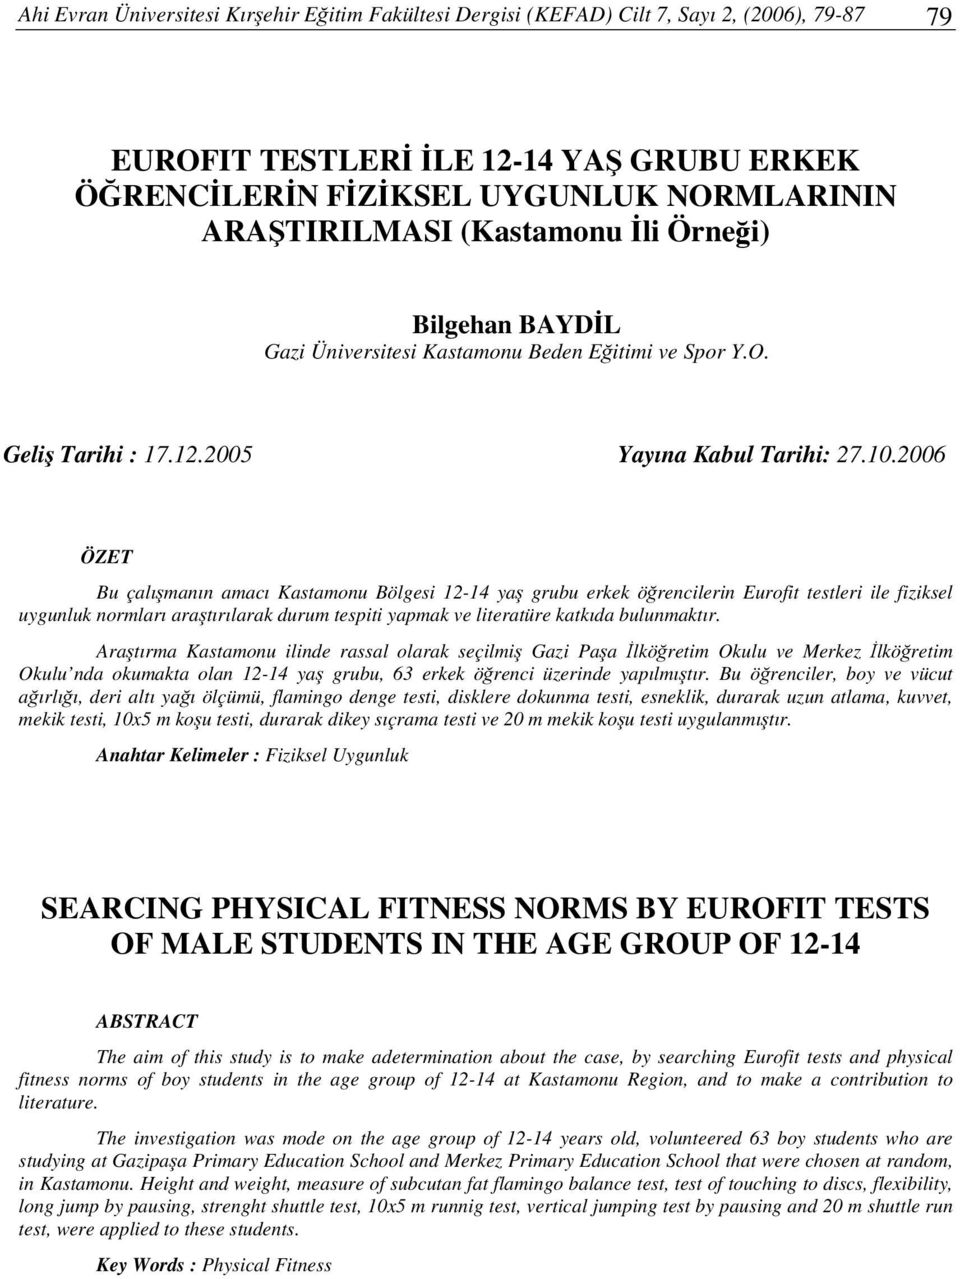 2006 ÖZET Bu çalımanın amacı Kastamonu Bölgesi 12-14 ya grubu erkek örencilerin Eurofit testleri ile fiziksel uygunluk normları aratırılarak durum tespiti yapmak ve literatüre katkıda bulunmaktır.